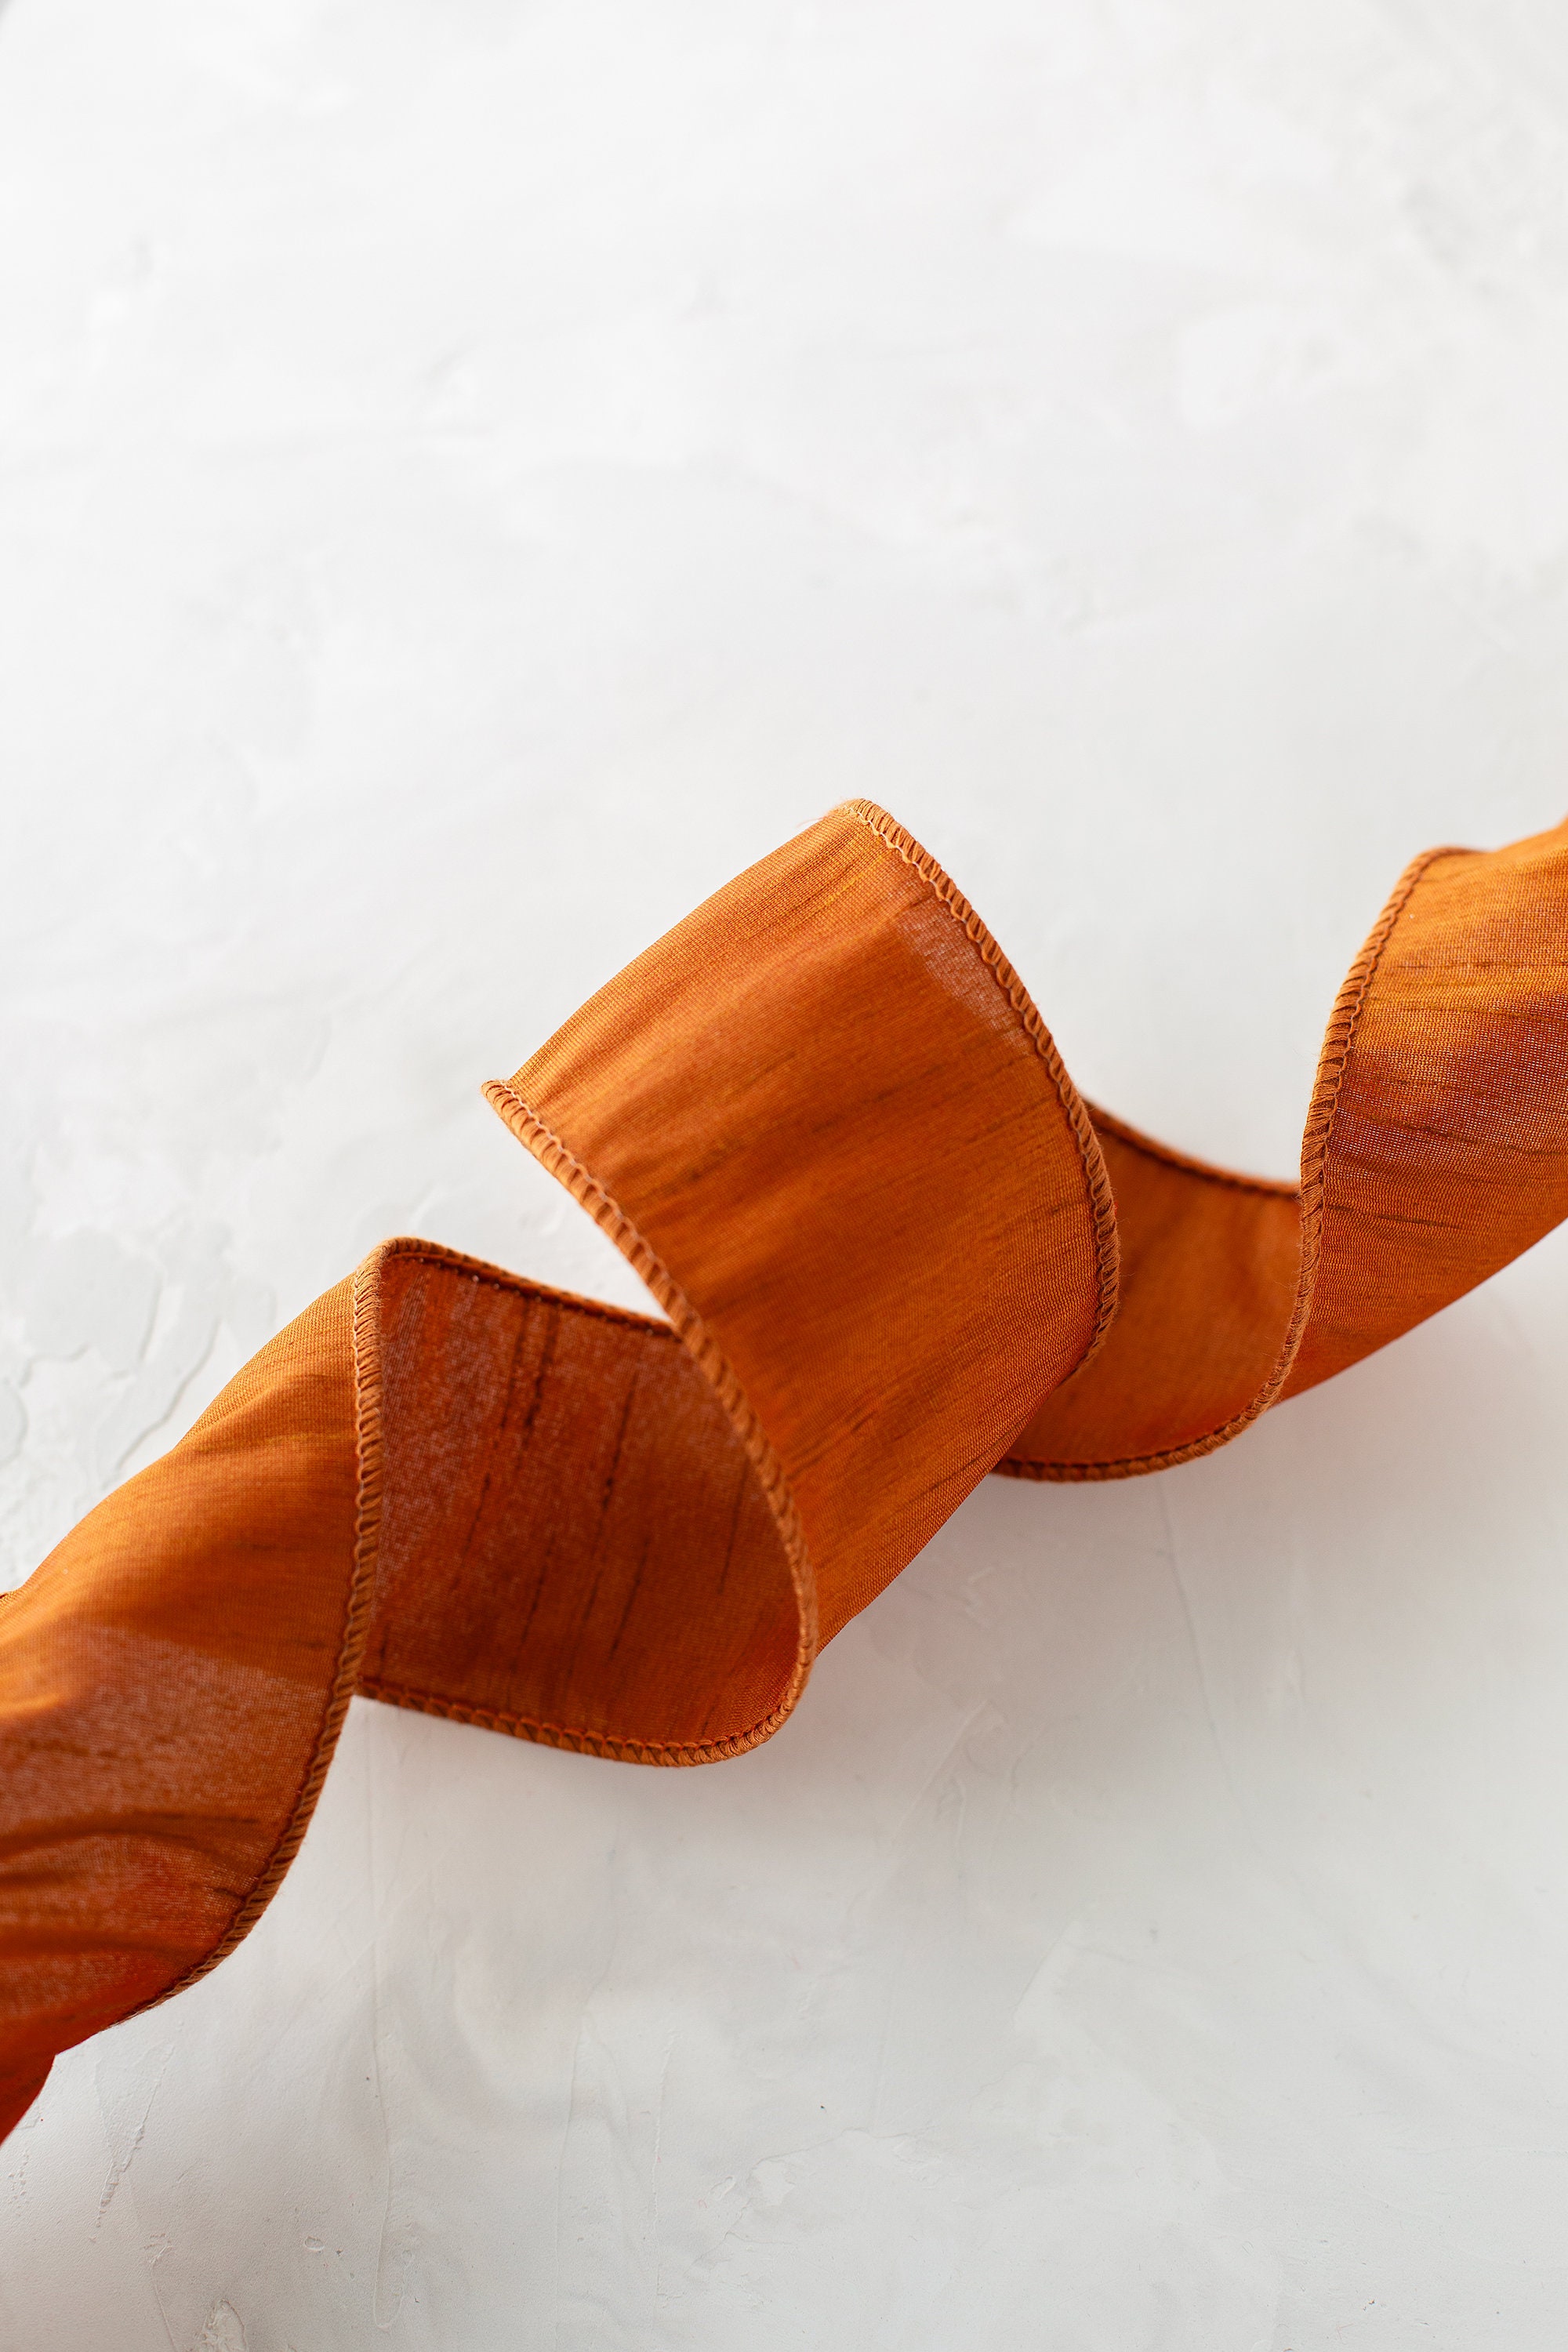 Burnt Orange Silk Ribbon 1/4 Wide BY THE YARD -  Canada